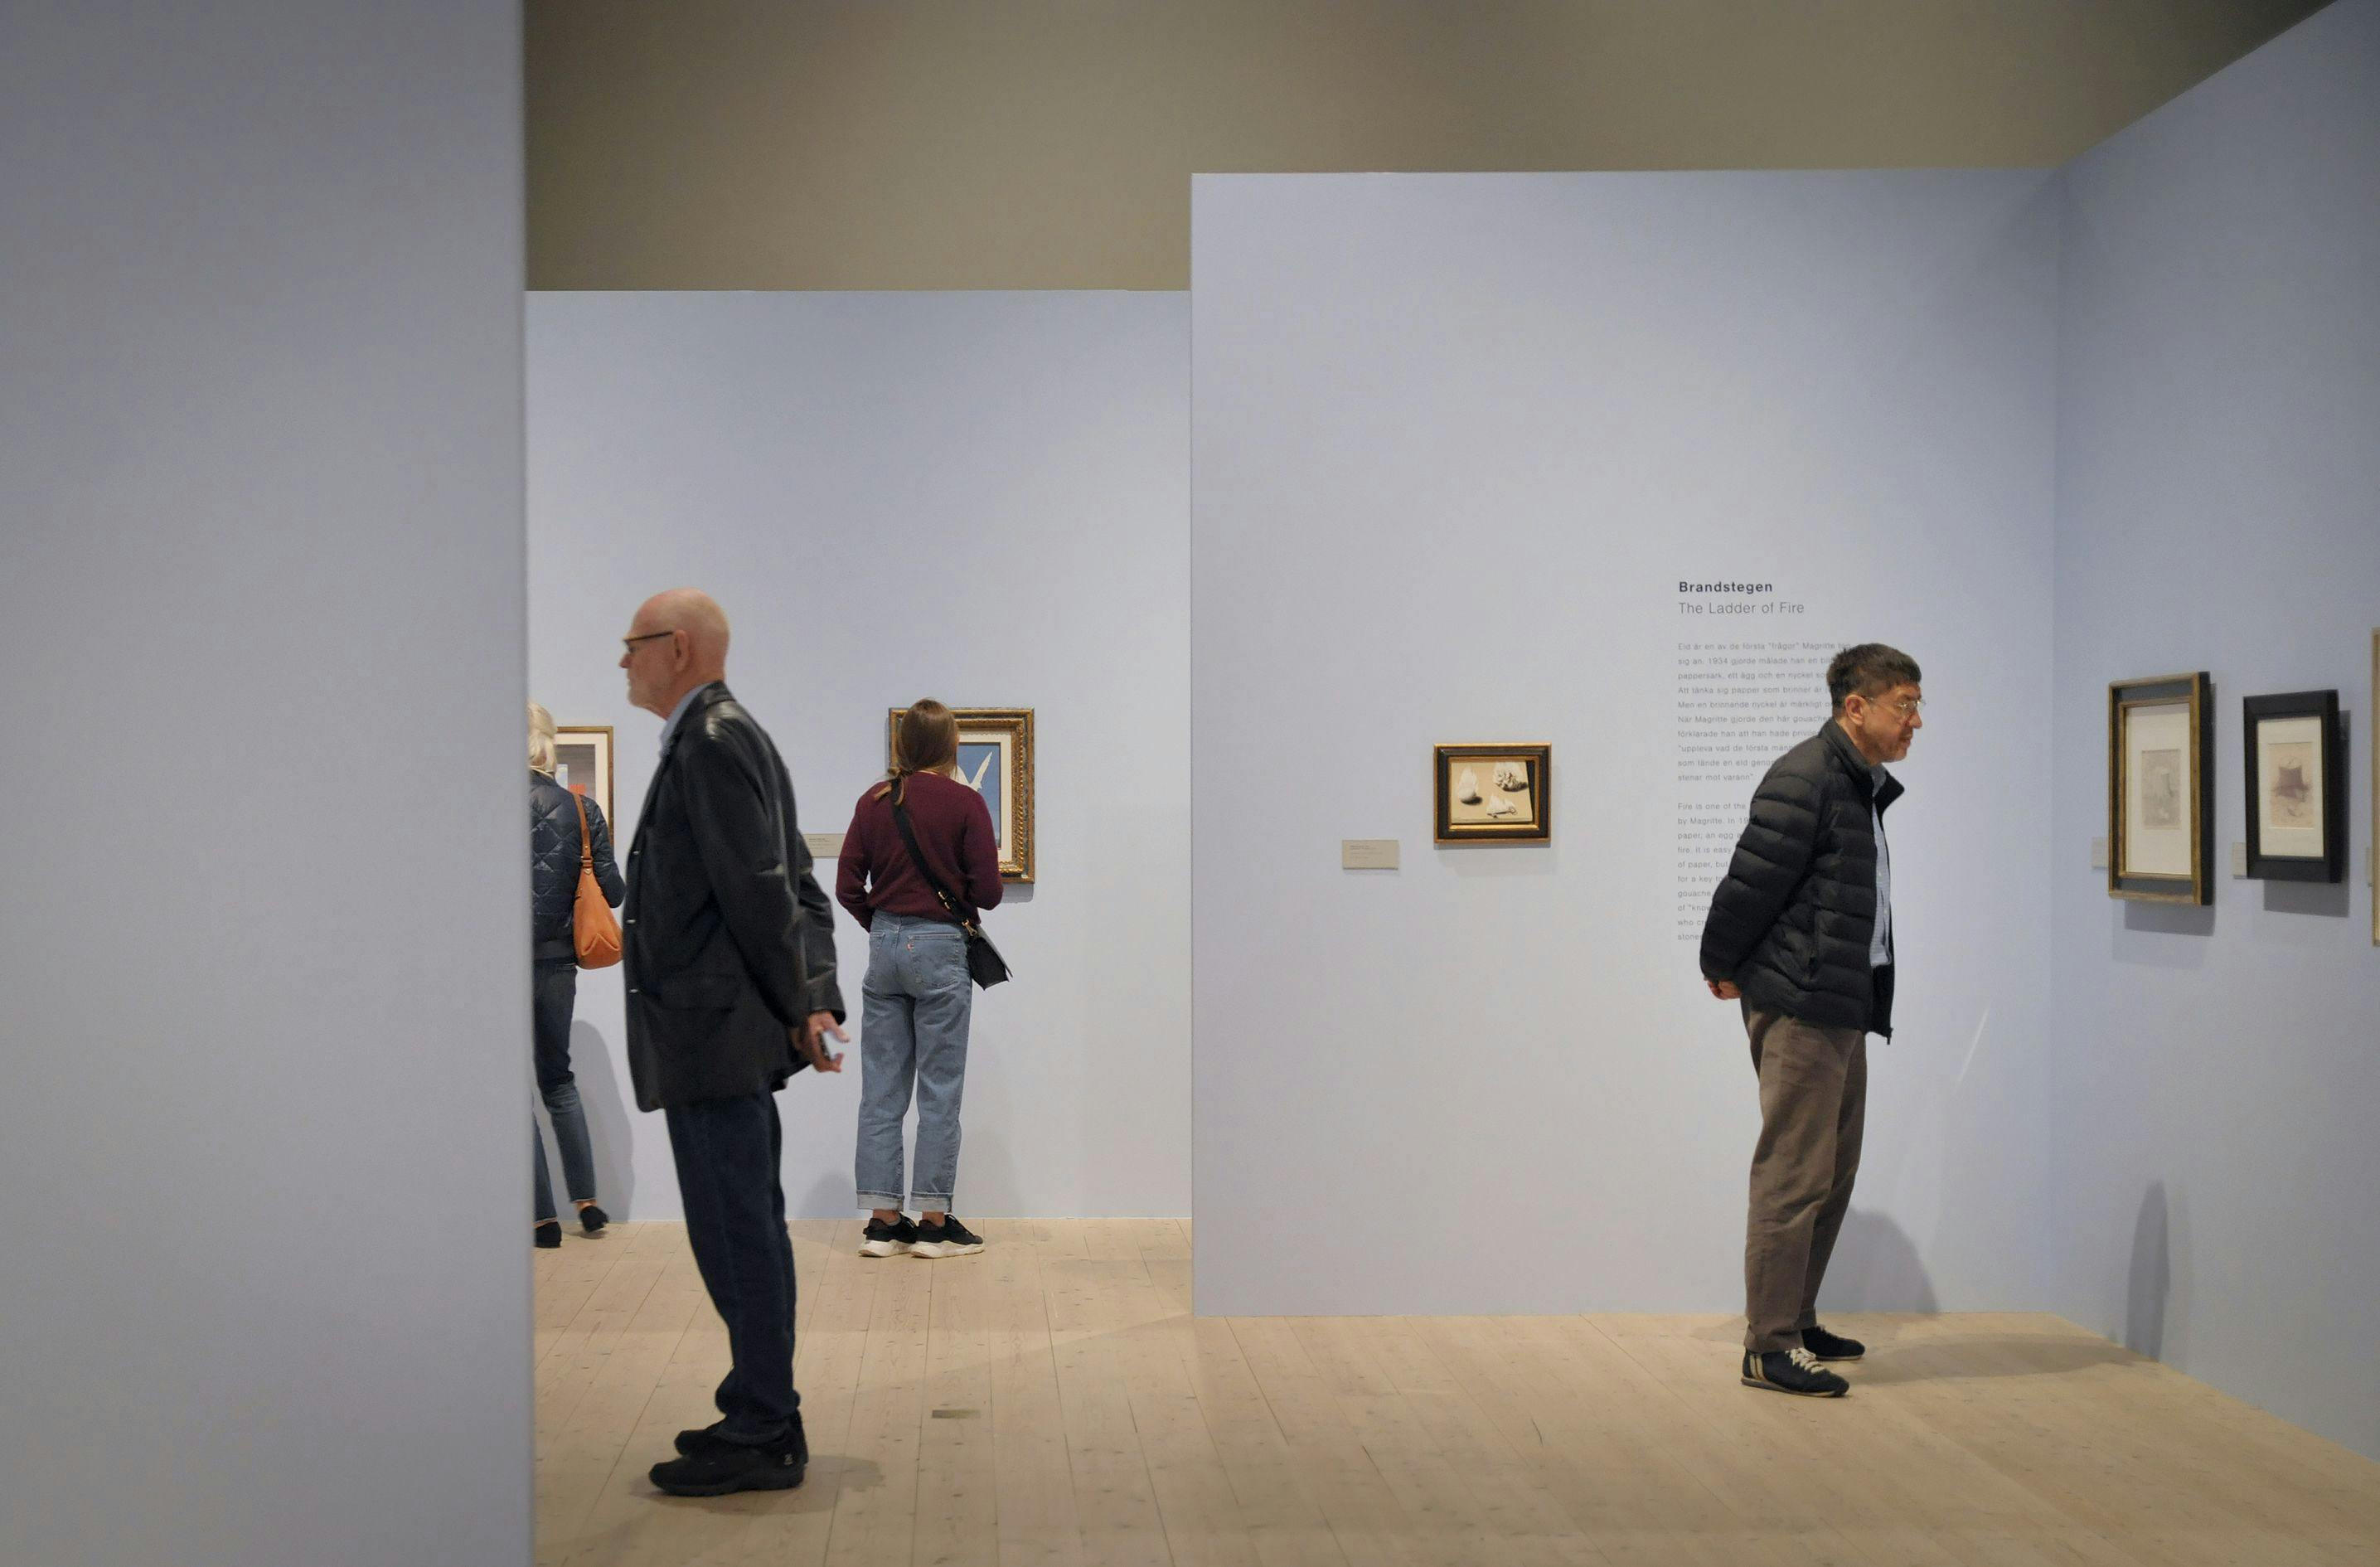 Besökare tittar på konst av Magritte på violetta väggar